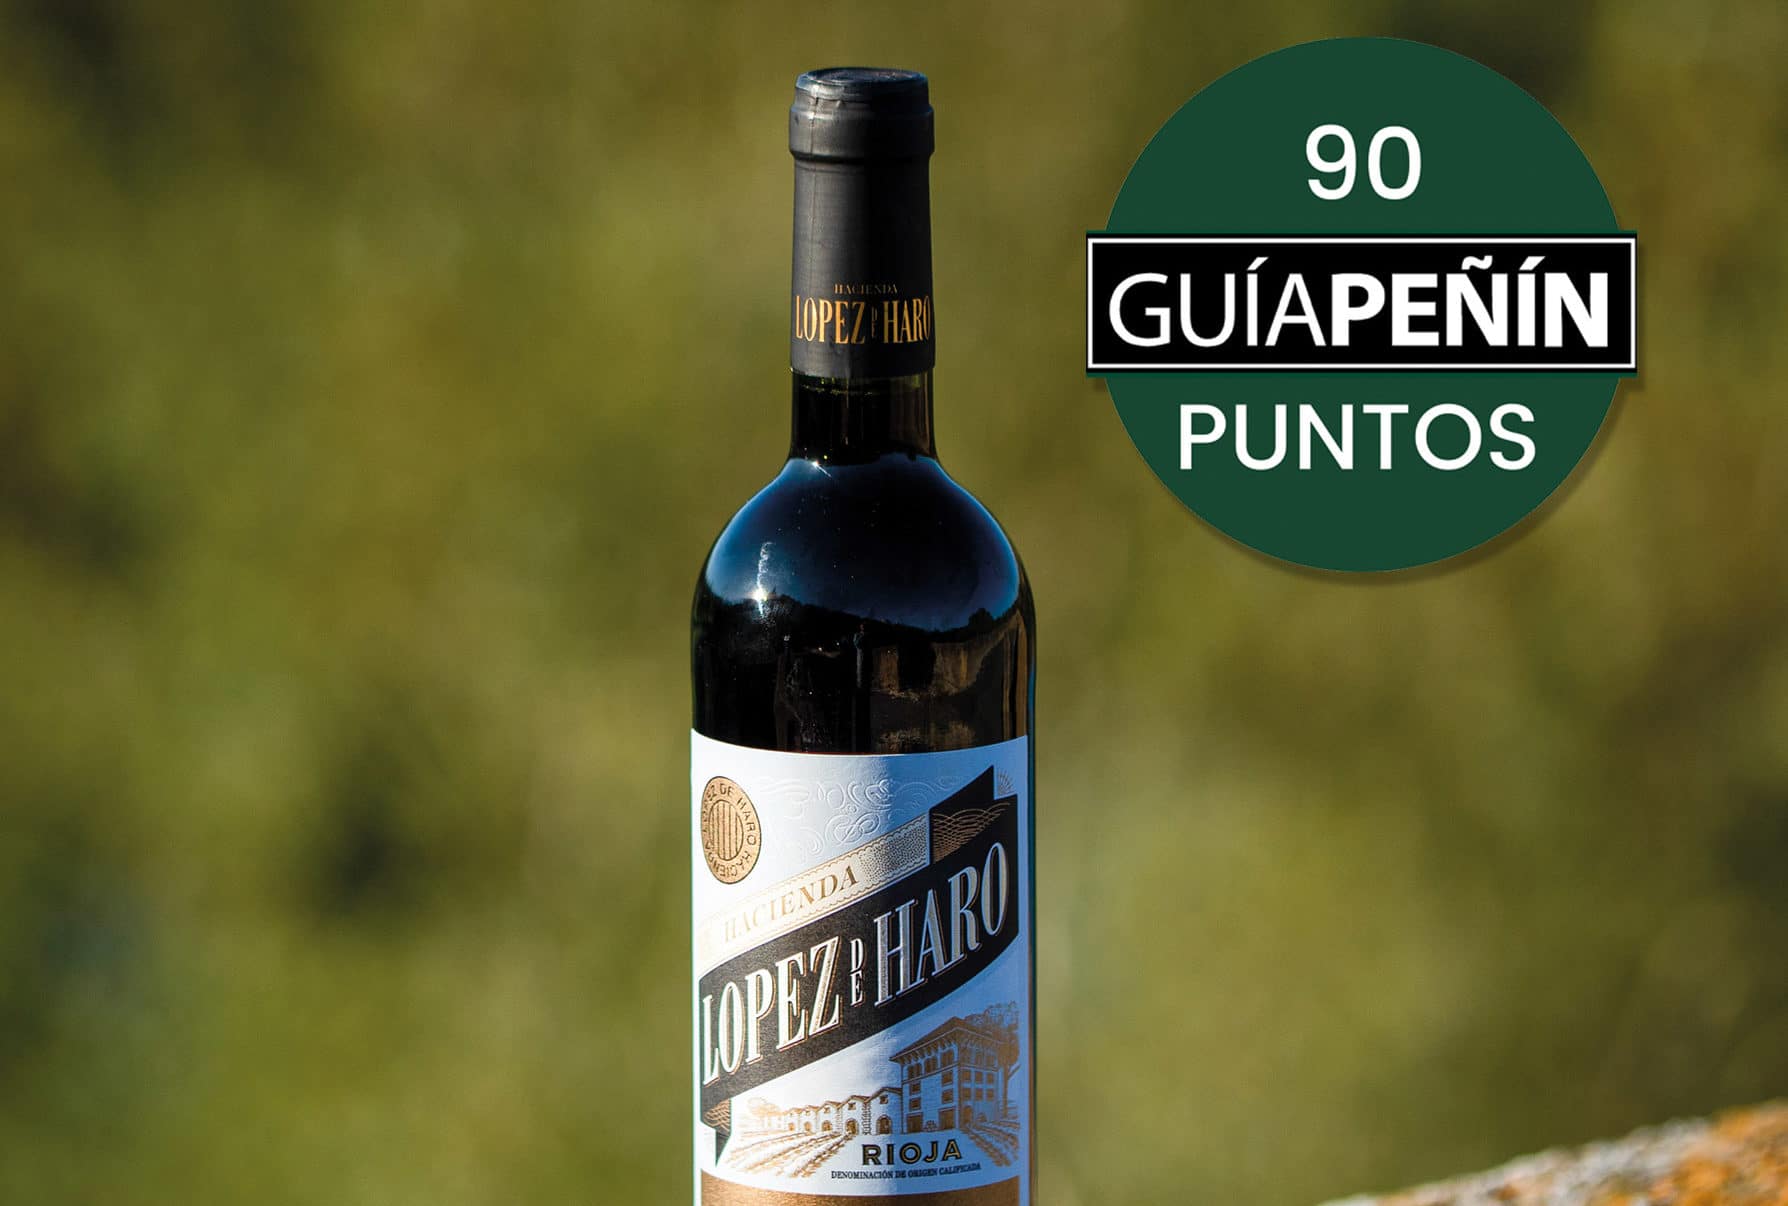 Hacienda López de Haro Crianza estrena añada 2018 entre los “Mejores vinos” de España en la Guía Peñín